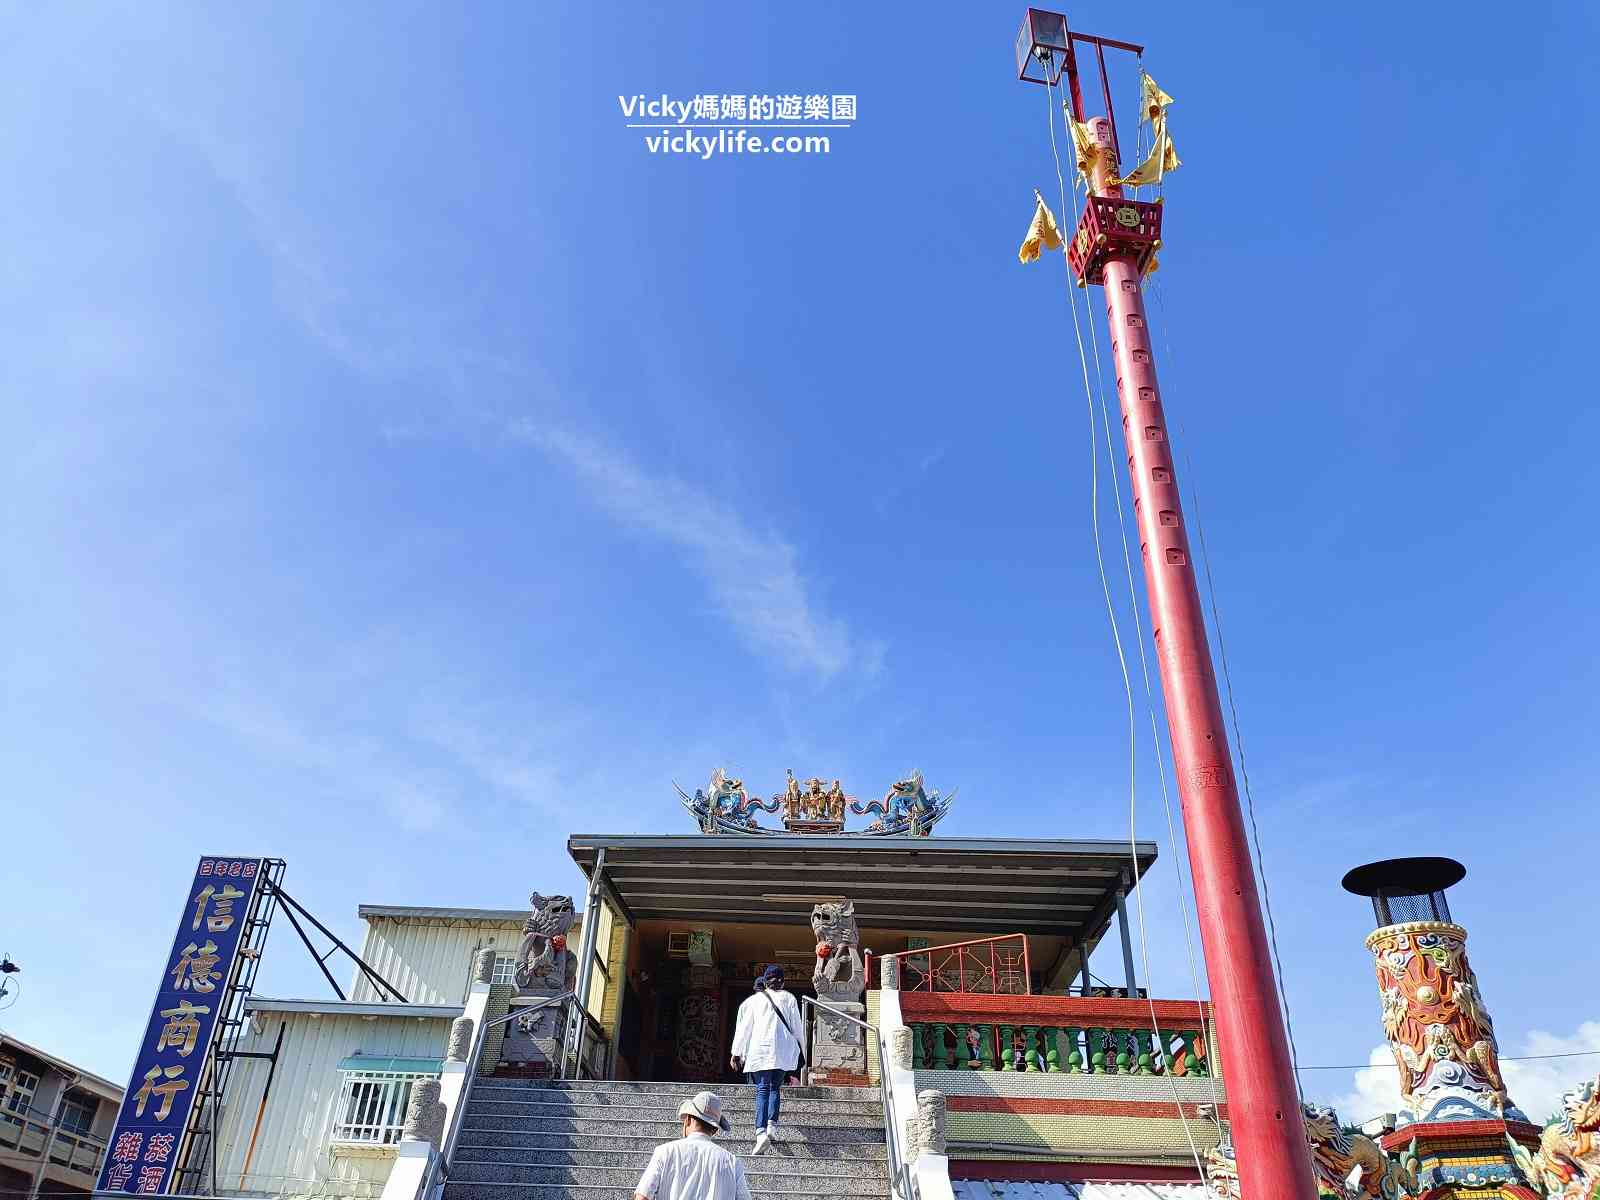 台南安平︱航海王ONE PIECE海潮慶典：12米千陽號來跟大家見面嚕！還有5座2米高超可愛喬巴帽氣球！限量商品快閃店也一定要逛！